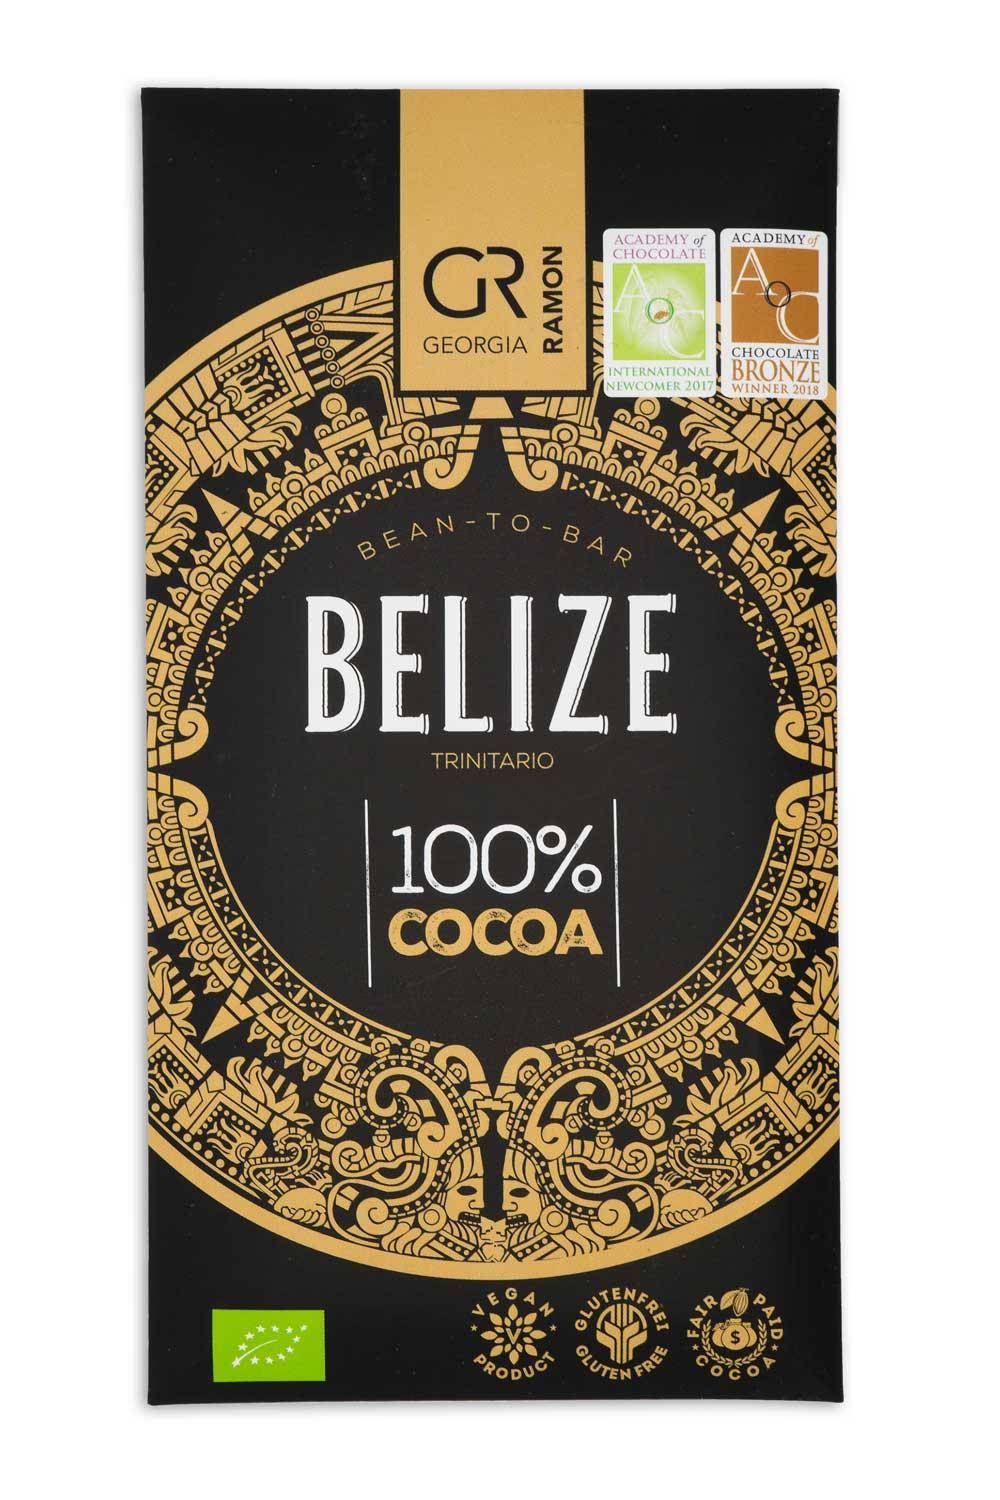 Verpackung der "Belize 100%" Kakaomasse von Georgia Ramon - schwarzer Hintergrund mit goldenem Kranz mit Mandala-Muster